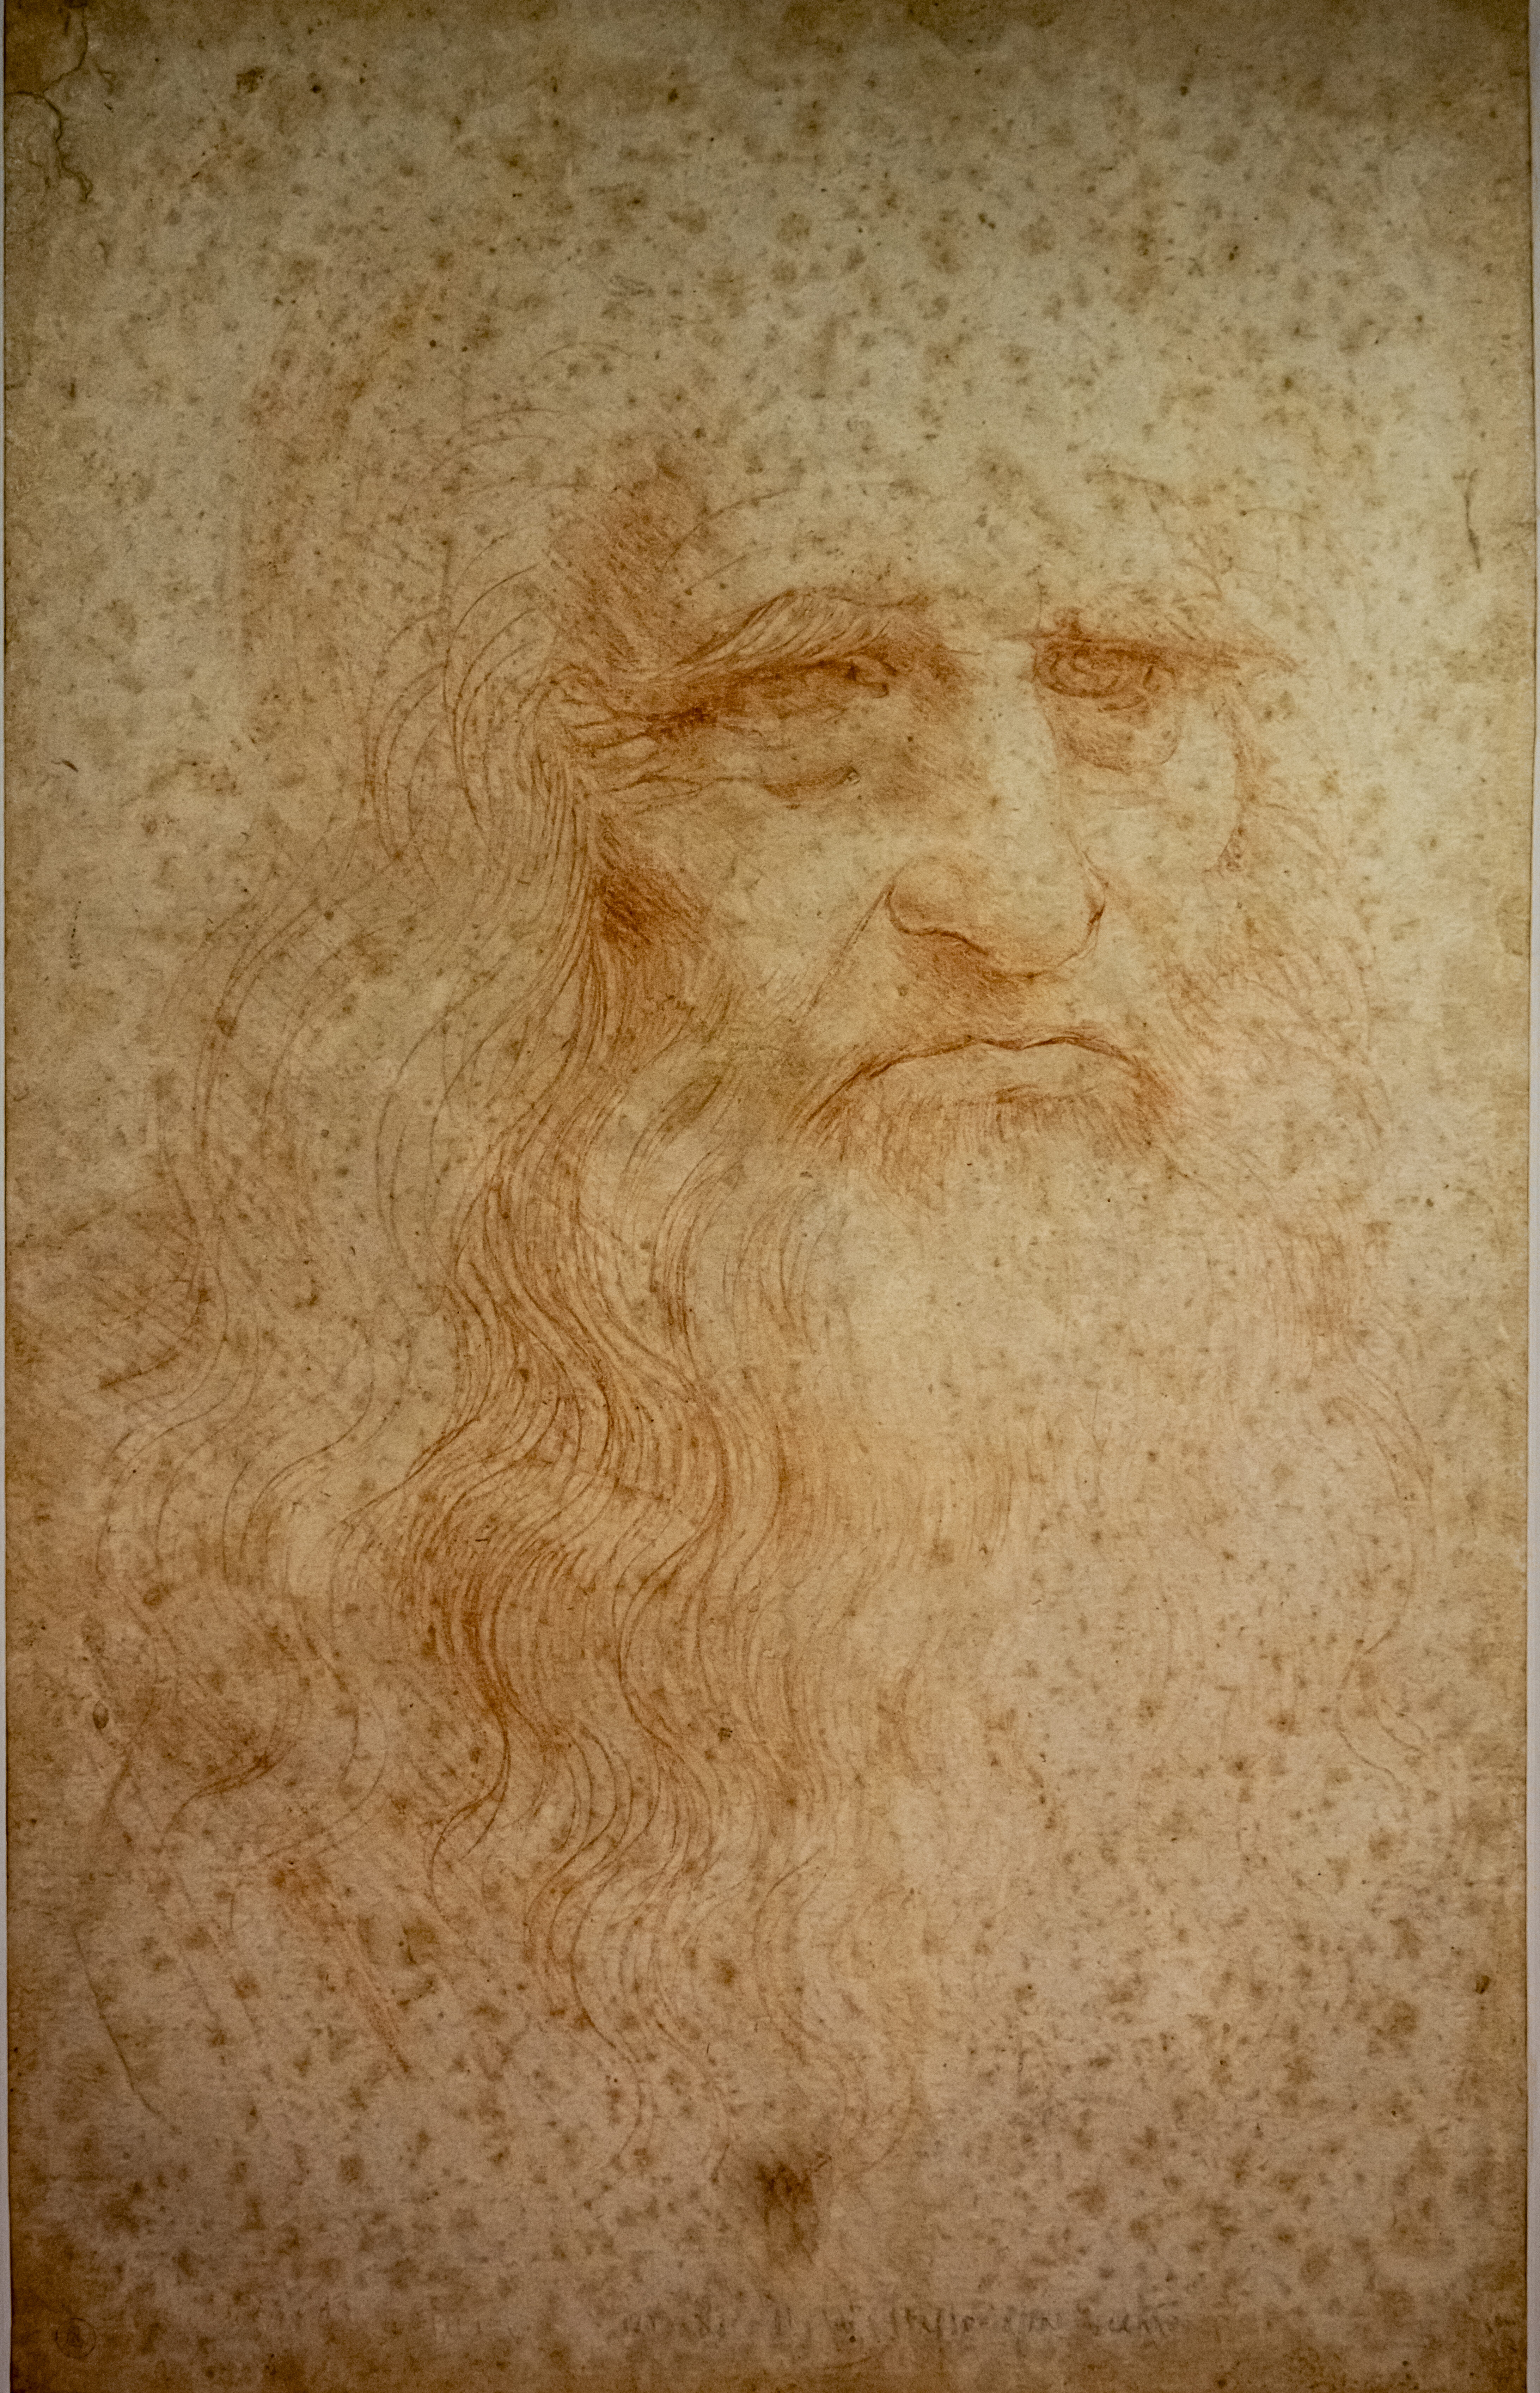 ritratto di Leonardo da Vinci - Biblioteca Reale - Torino